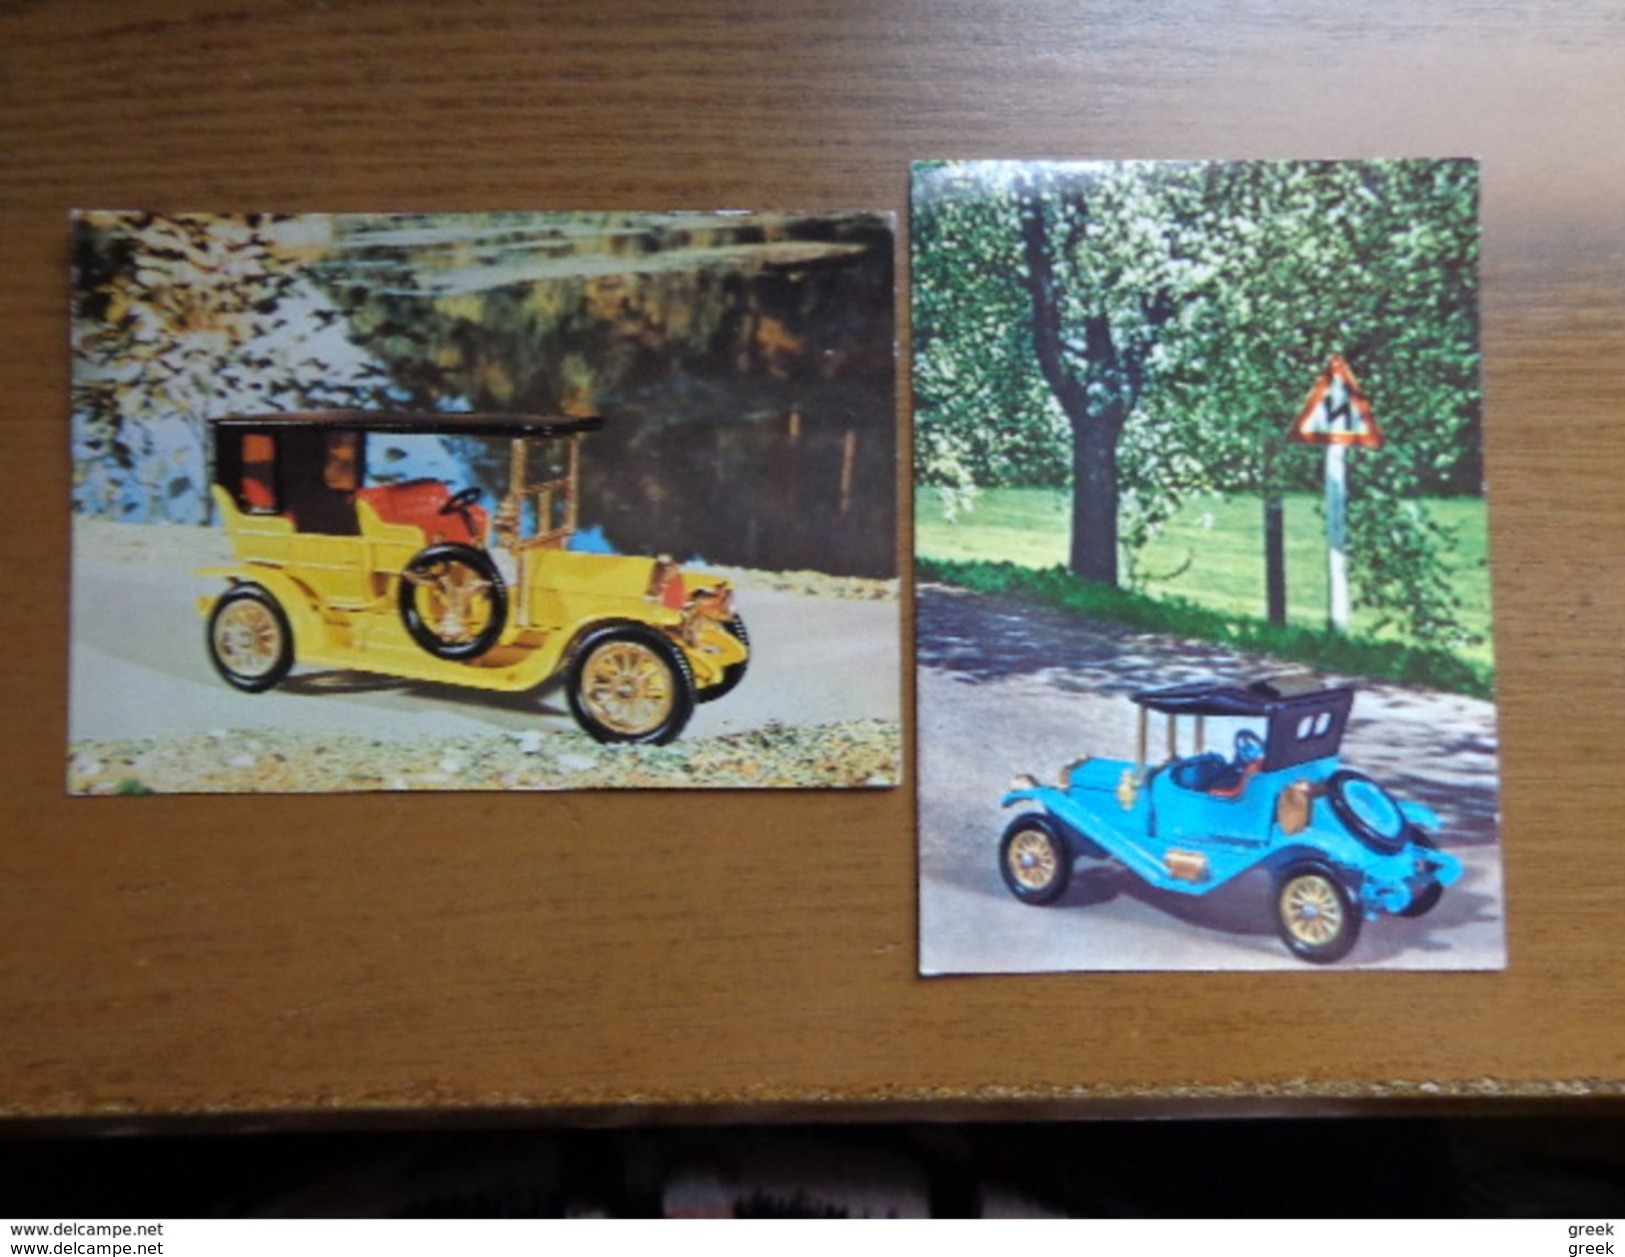 Doos +5kg postkaarten: Allerlei landen (zowel gekleurde als oude kaarten) en thema's (trams, transport, ...) zie foto's